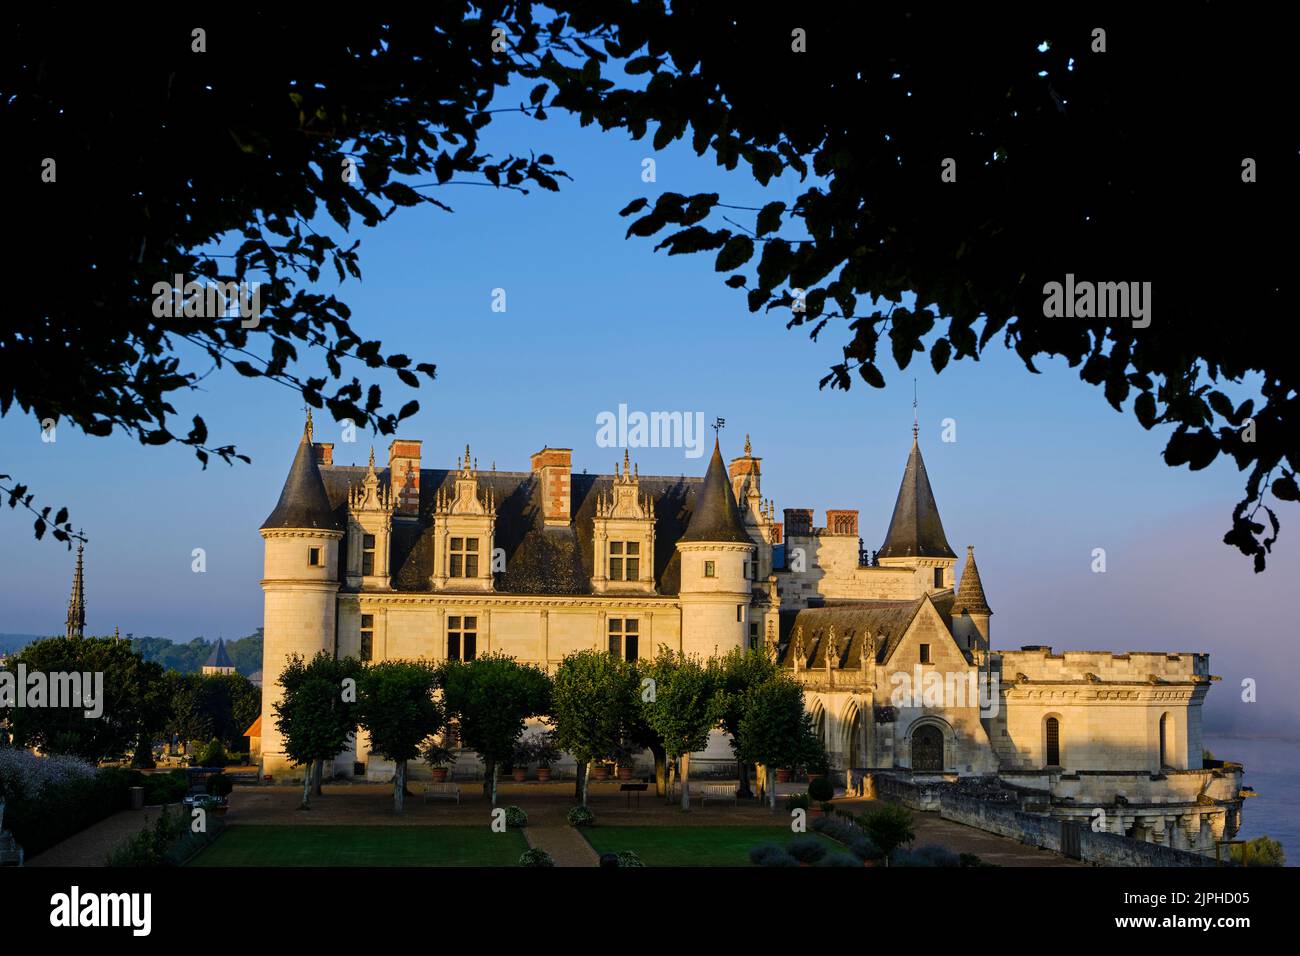 Frankreich, Indre-et-Loire, Amboise, Loire-Tal, das von der UNESCO zum Weltkulturerbe erklärt wurde, Schlösser im Loire-Tal, königliche Burg von Amboise mit Gaden Stockfoto